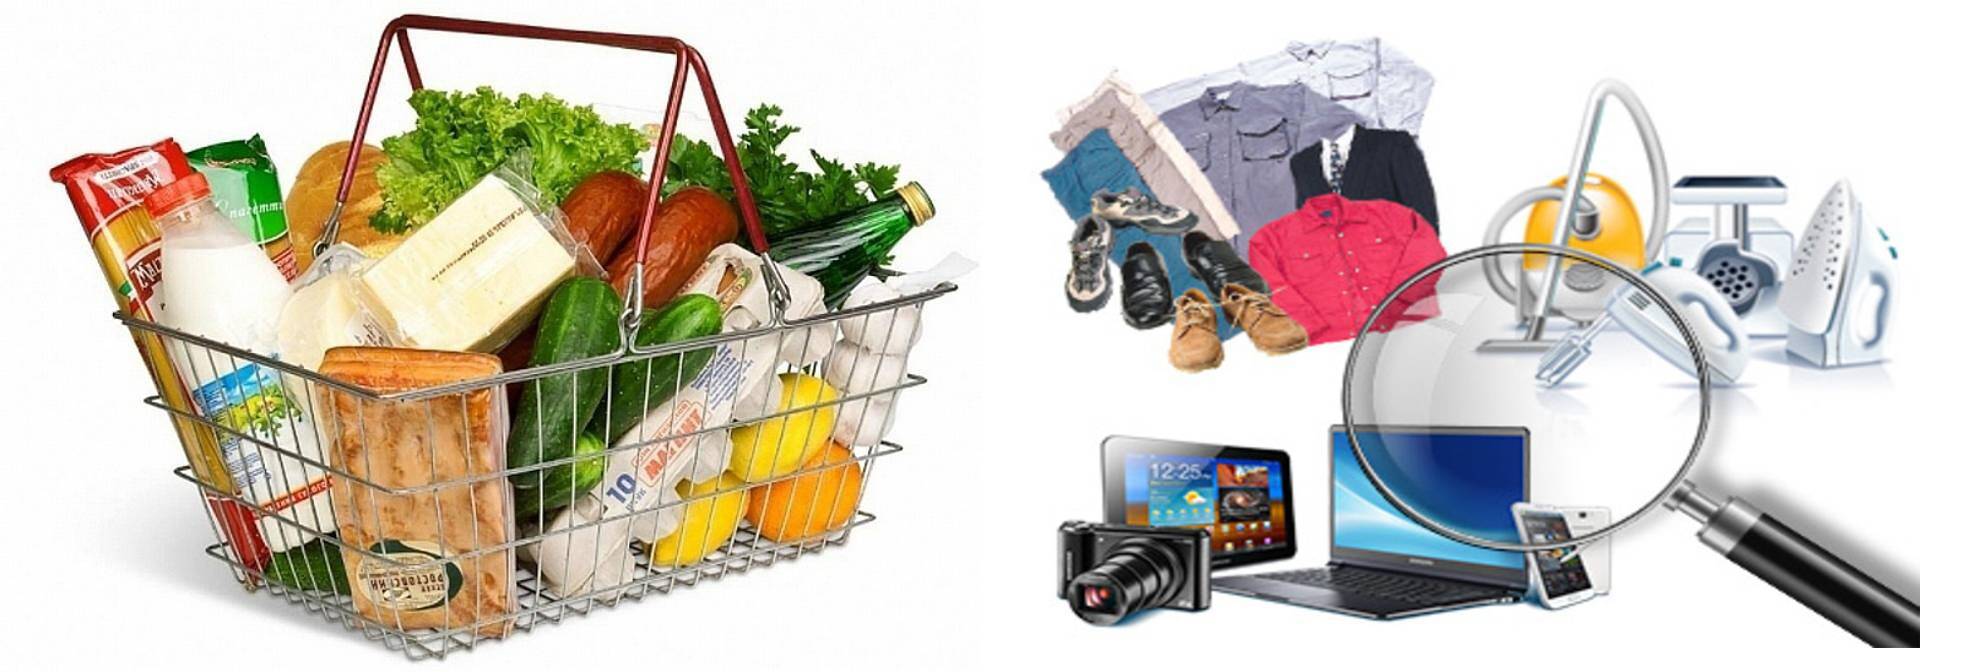 Что такое непродовольственные товары. непродовольственные товары: список, категории, приобретение и право обмена и возврата